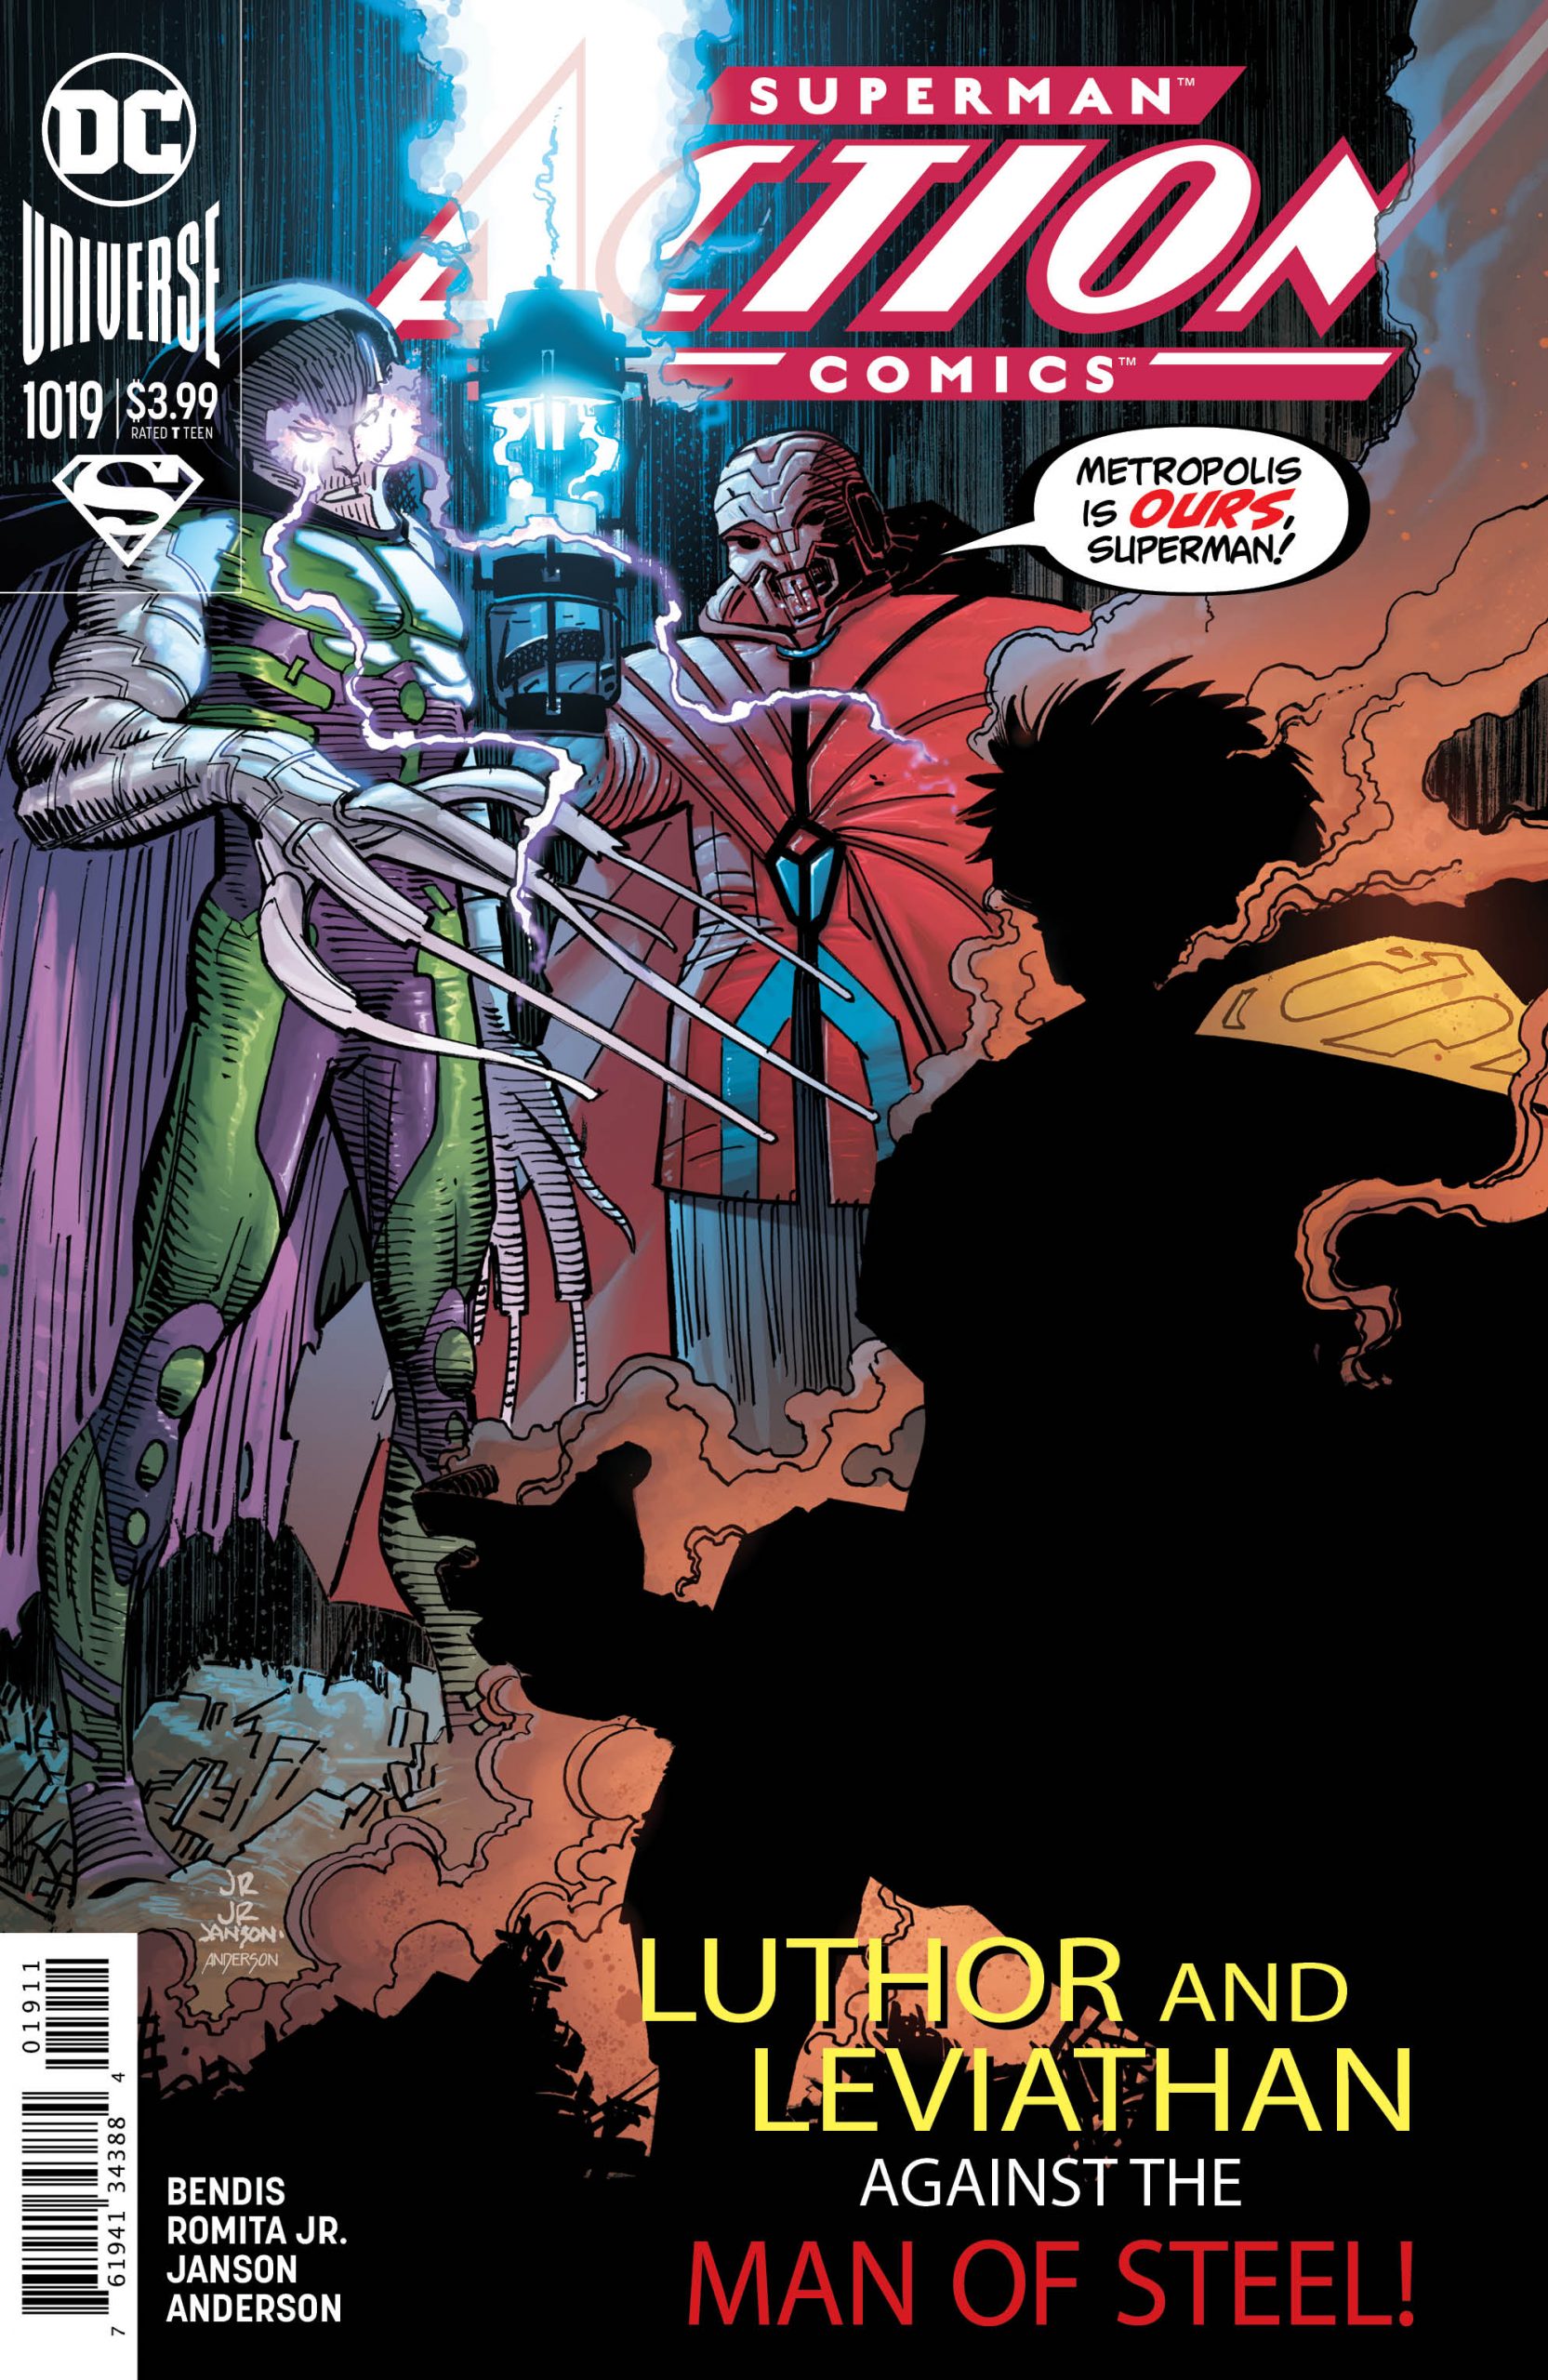 DC Preview: Action Comics #1019